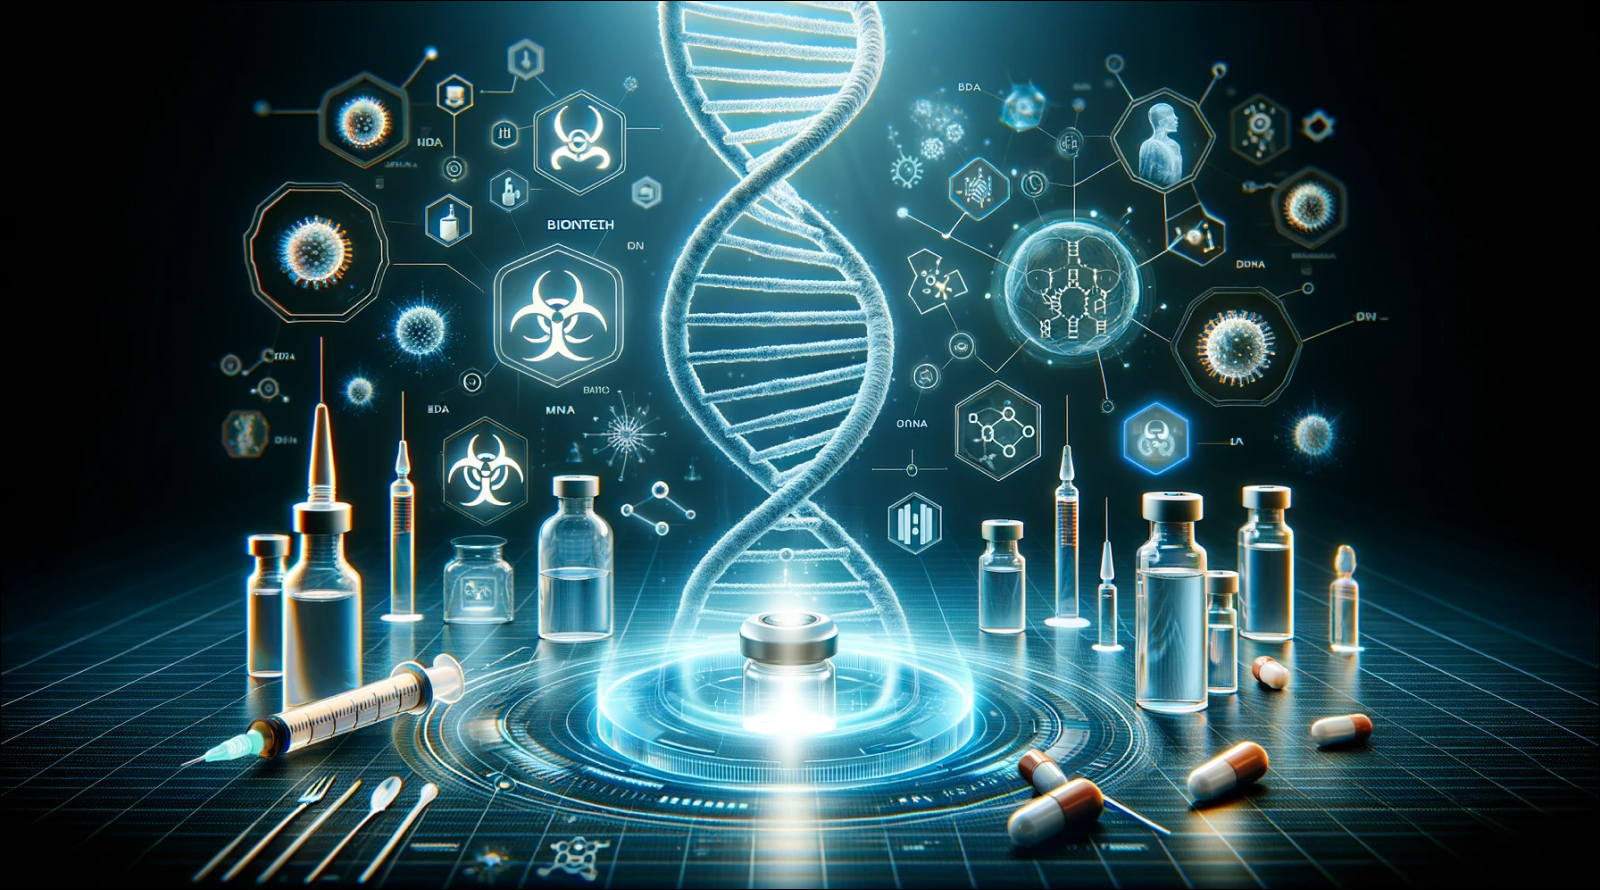 eine DNA-Helix, Laborutensilien und schematische wissenschaftliche Symbole auf einem technologischen Hintergrund.